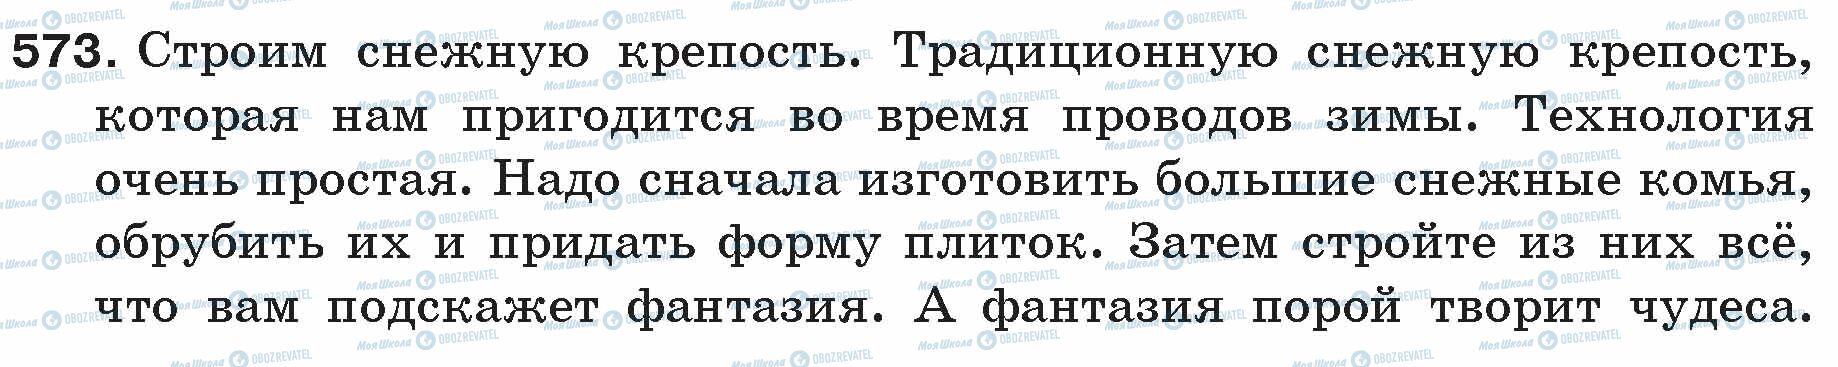 ГДЗ Російська мова 5 клас сторінка 573